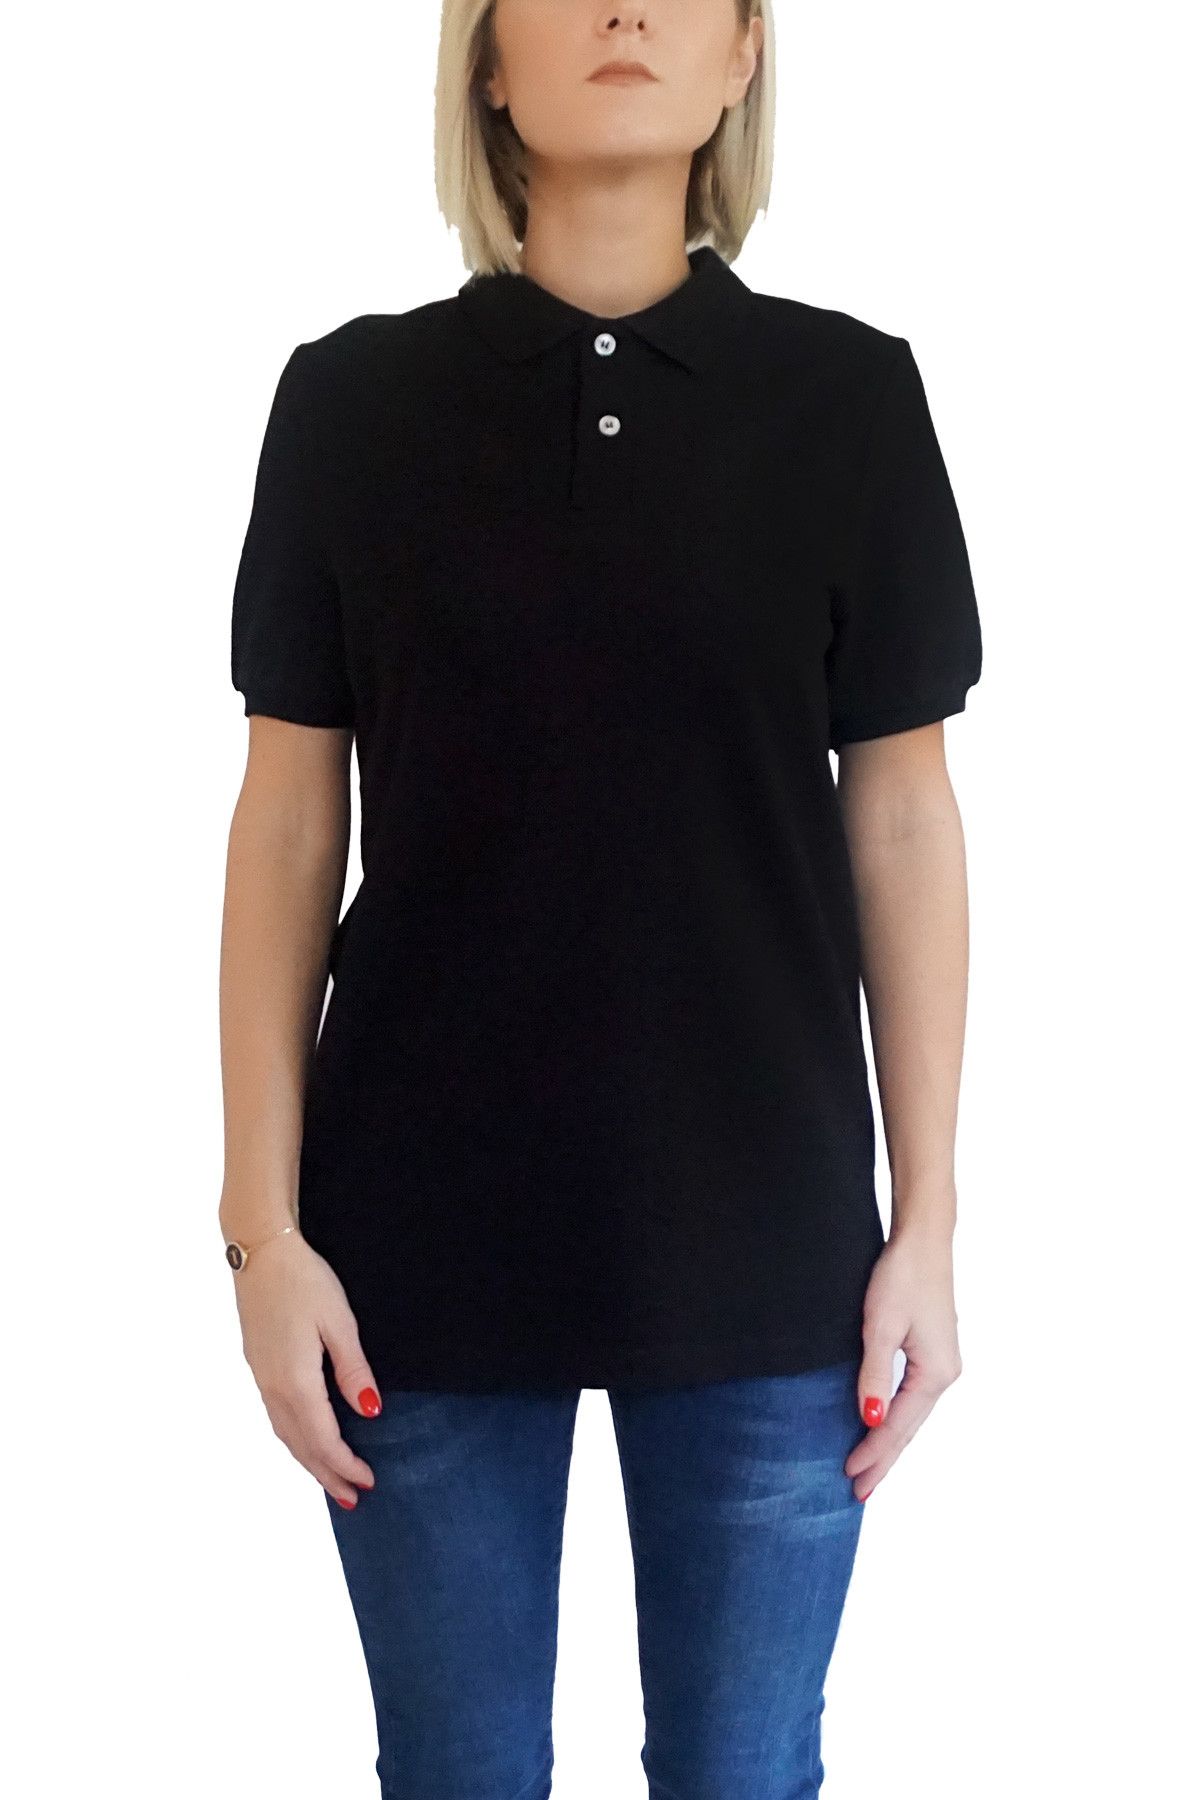 Mof Basics Kadın Siyah T-Shirt POLO-F-S